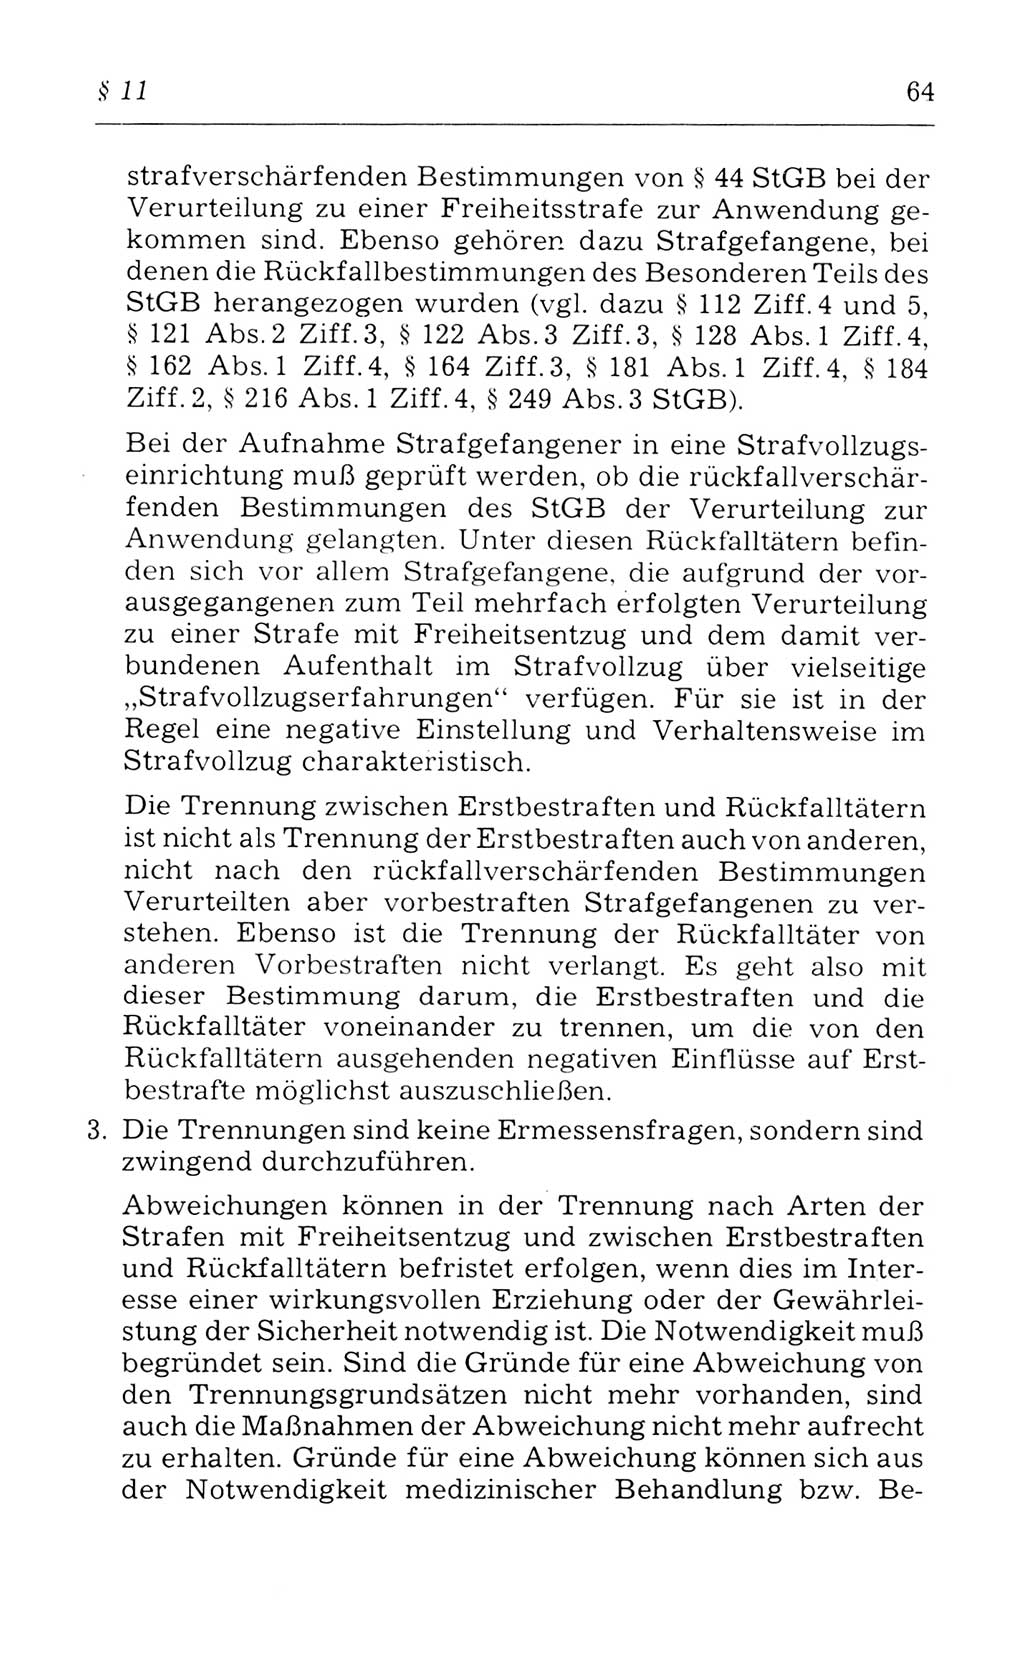 Kommentar zum Strafvollzugsgesetz [(StVG) Deutsche Demokratische Republik (DDR)] 1980, Seite 64 (Komm. StVG DDR 1980, S. 64)